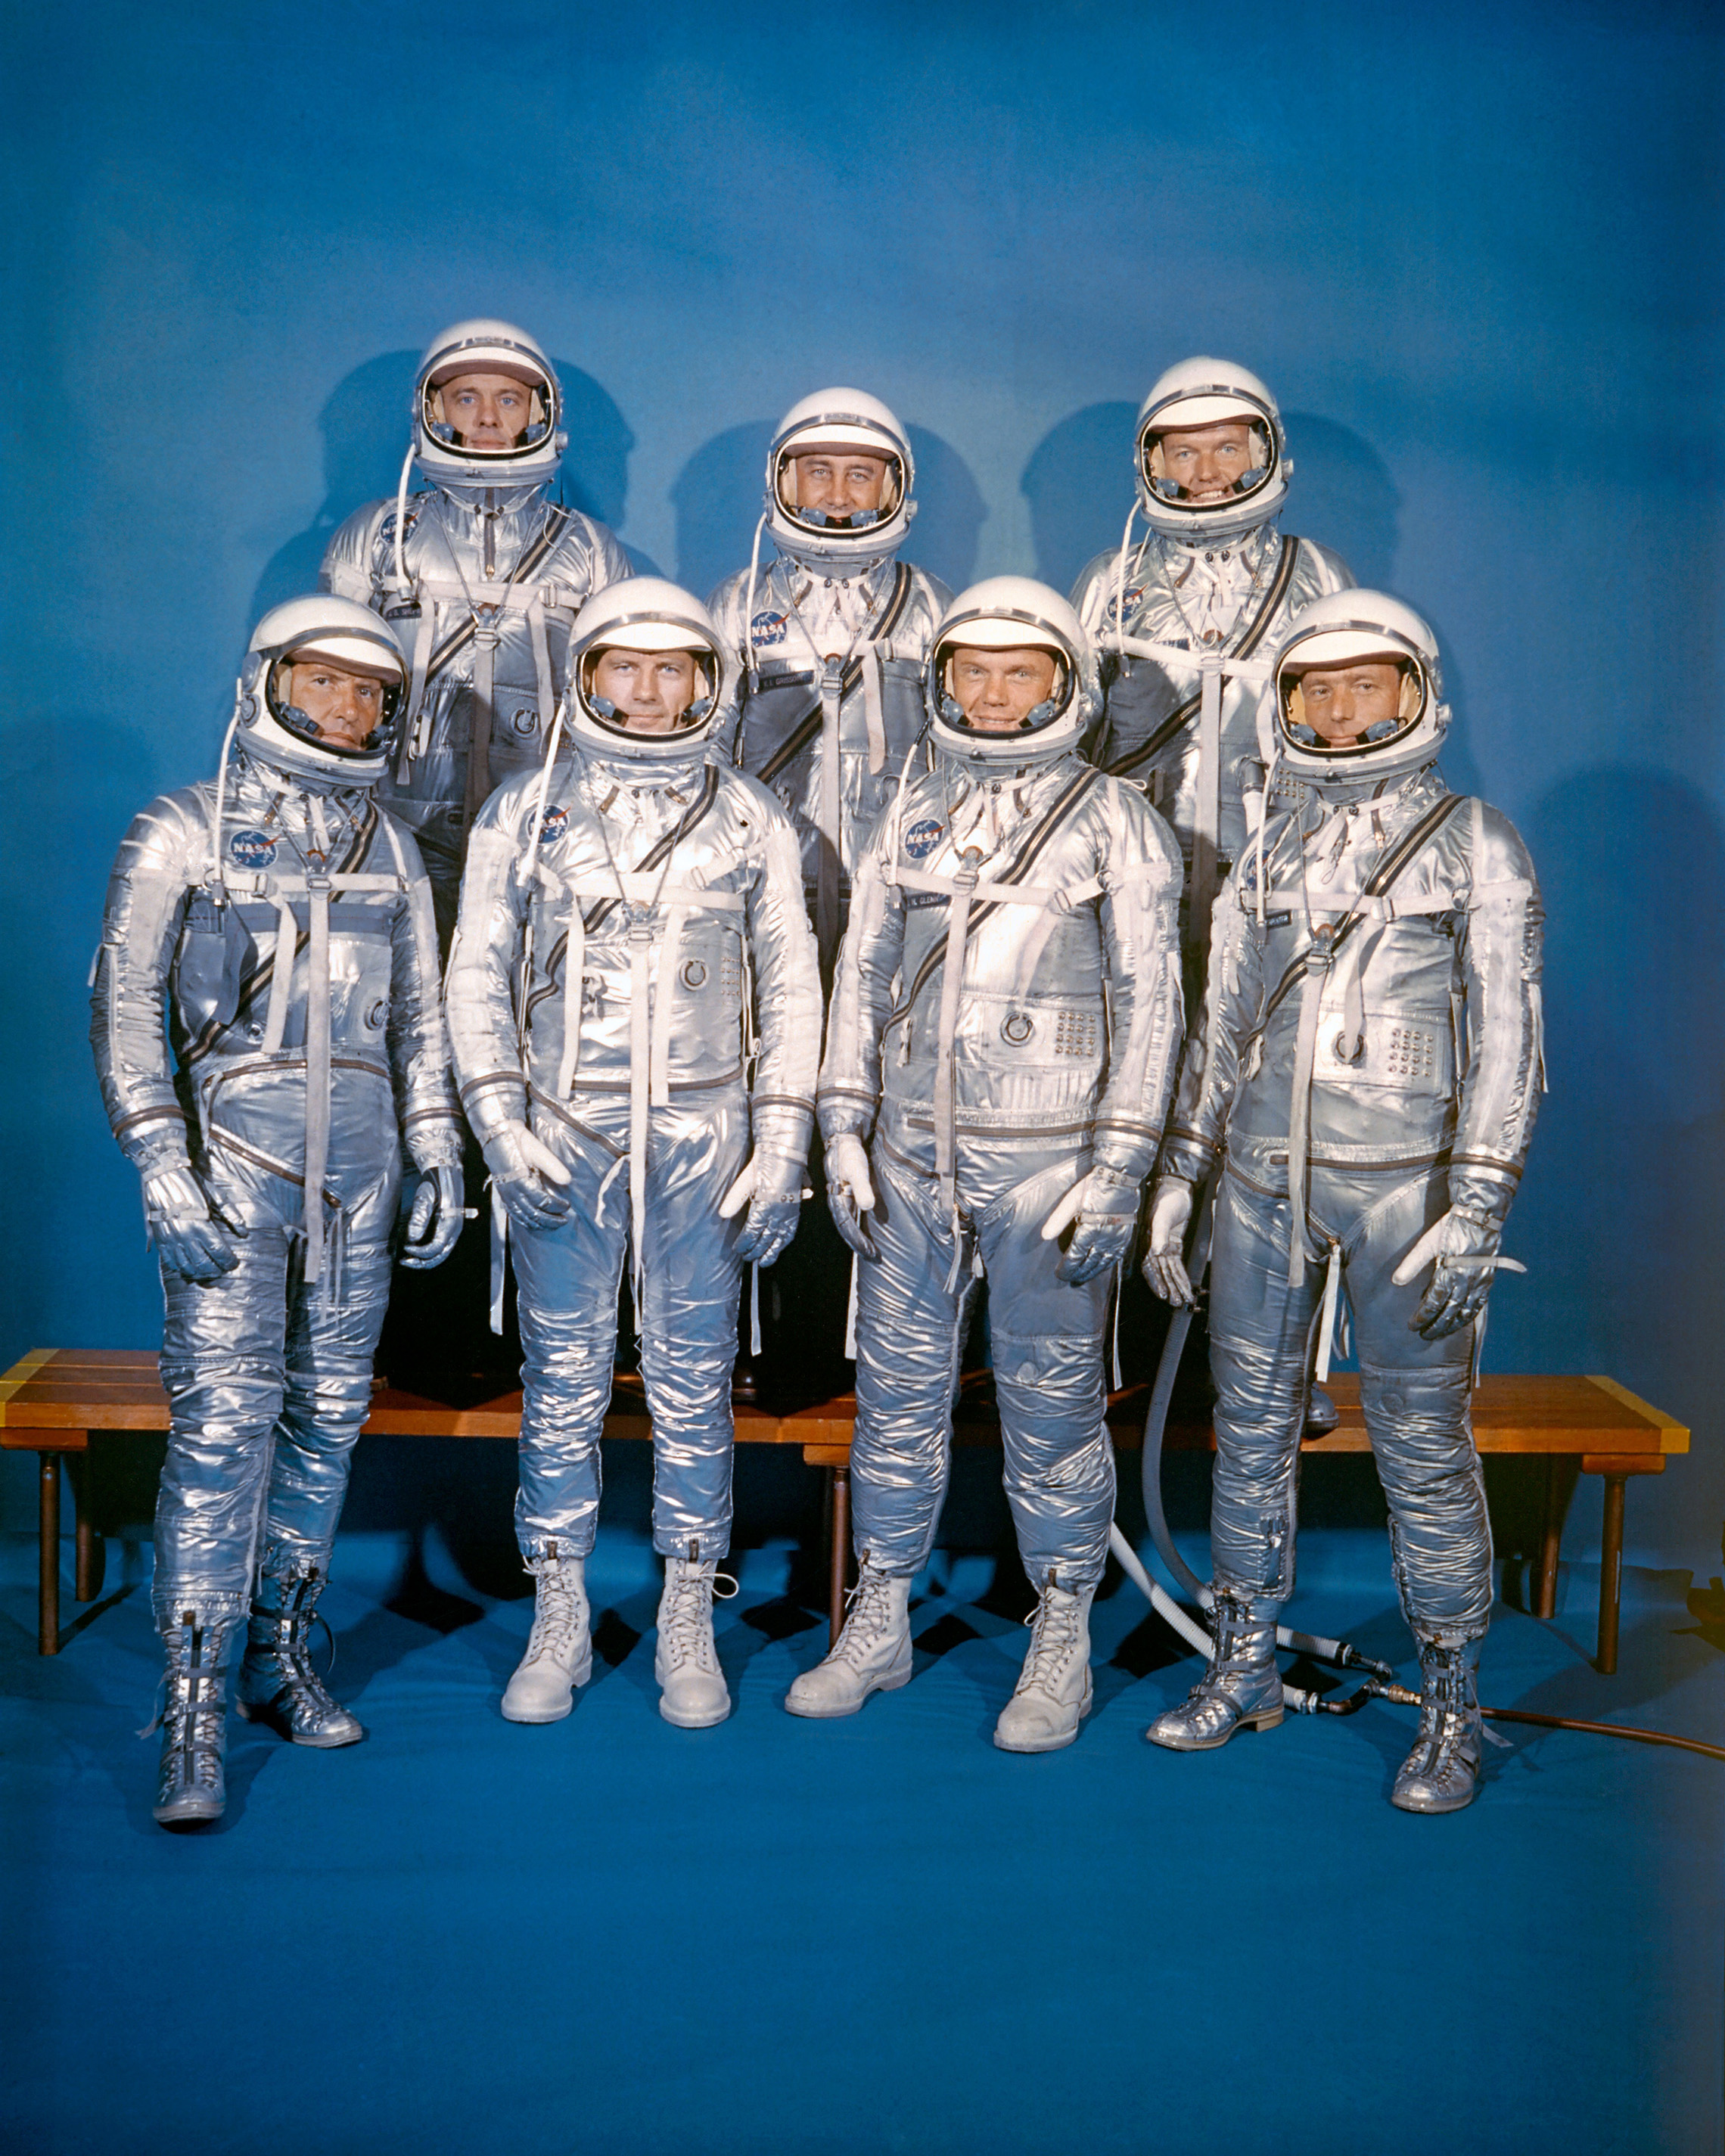 9.Dubna 1959 NASA představila svou první třídu astronautů, Mercury 7. Přední řada, zleva doprava: Walter M. Schirra, Jr., Donald K. "Deke" Slayton, John H. Glenn, Jr., a M. Scott Carpenter; zadní řadě, Alan B. Shepard, Jr., Virgil I. "Gus" Grissom, a L. Gordon Cooper Junior (NASA)"Deke" Slayton, John H. Glenn, Jr., and M. Scott Carpenter; back row, Alan B. Shepard, Jr., Virgil I. "Gus" Grissom, and L. Gordon Cooper, Jr. (NASA)